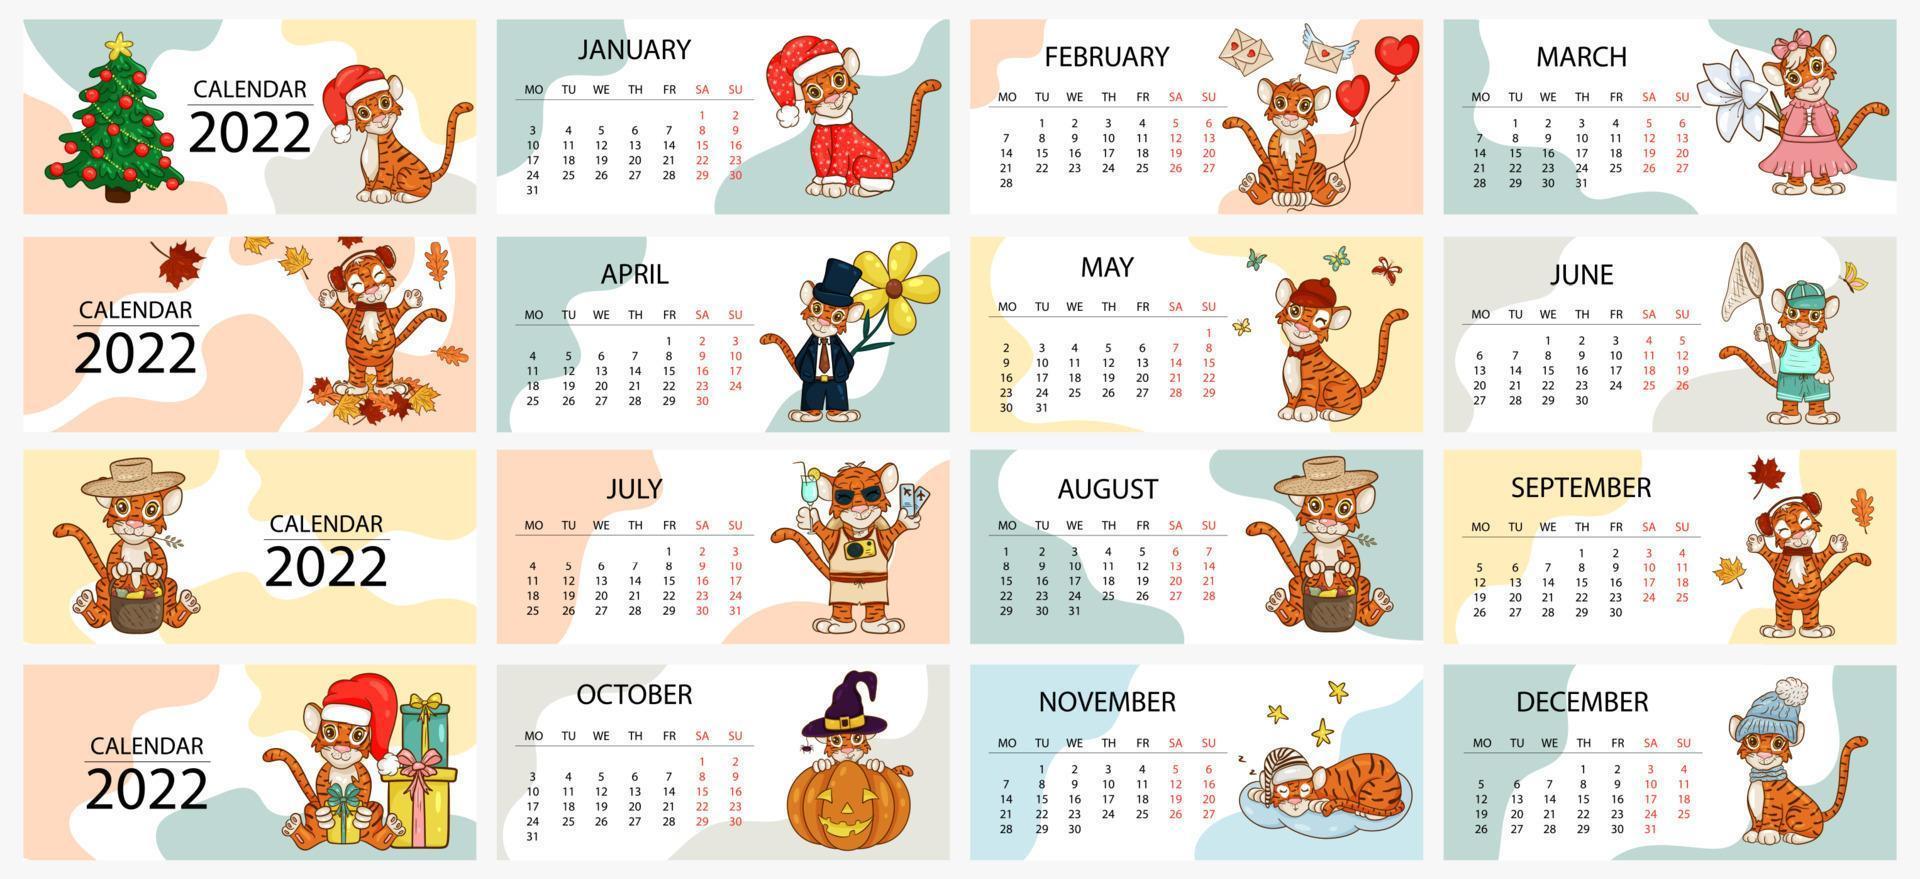 Kalenderentwurfsvorlage für 2022, das Jahr des Tigers nach dem chinesischen oder östlichen Kalender, mit einer Abbildung des Tigers, 12 Monate. horizontale Tabelle mit Kalender für 2022. Vektor